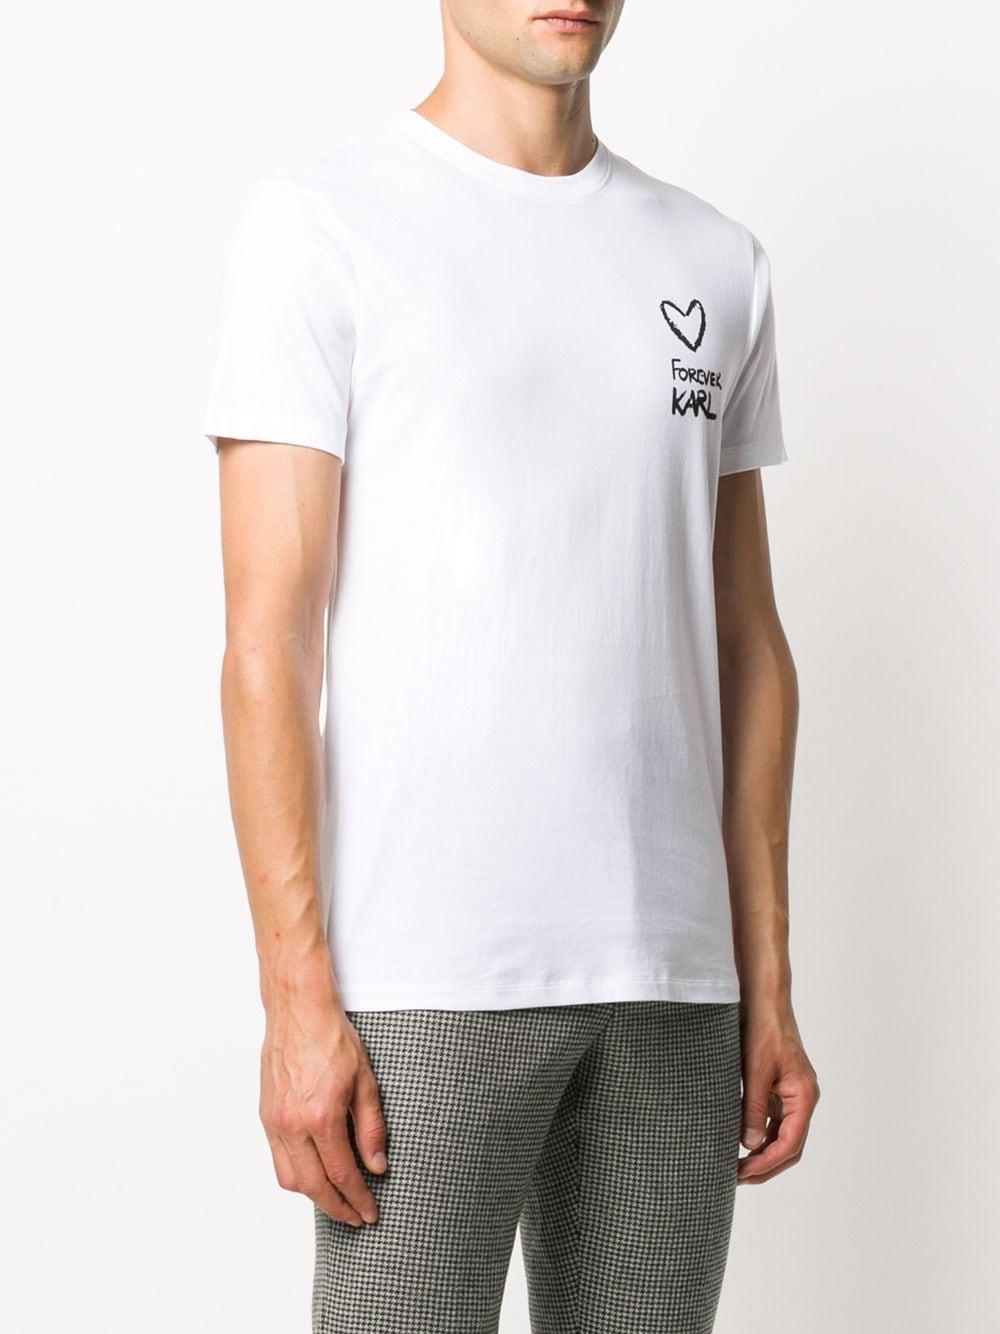 Karl Lagerfeld Cotton Forever Karl T-shirt in White for Men - Lyst